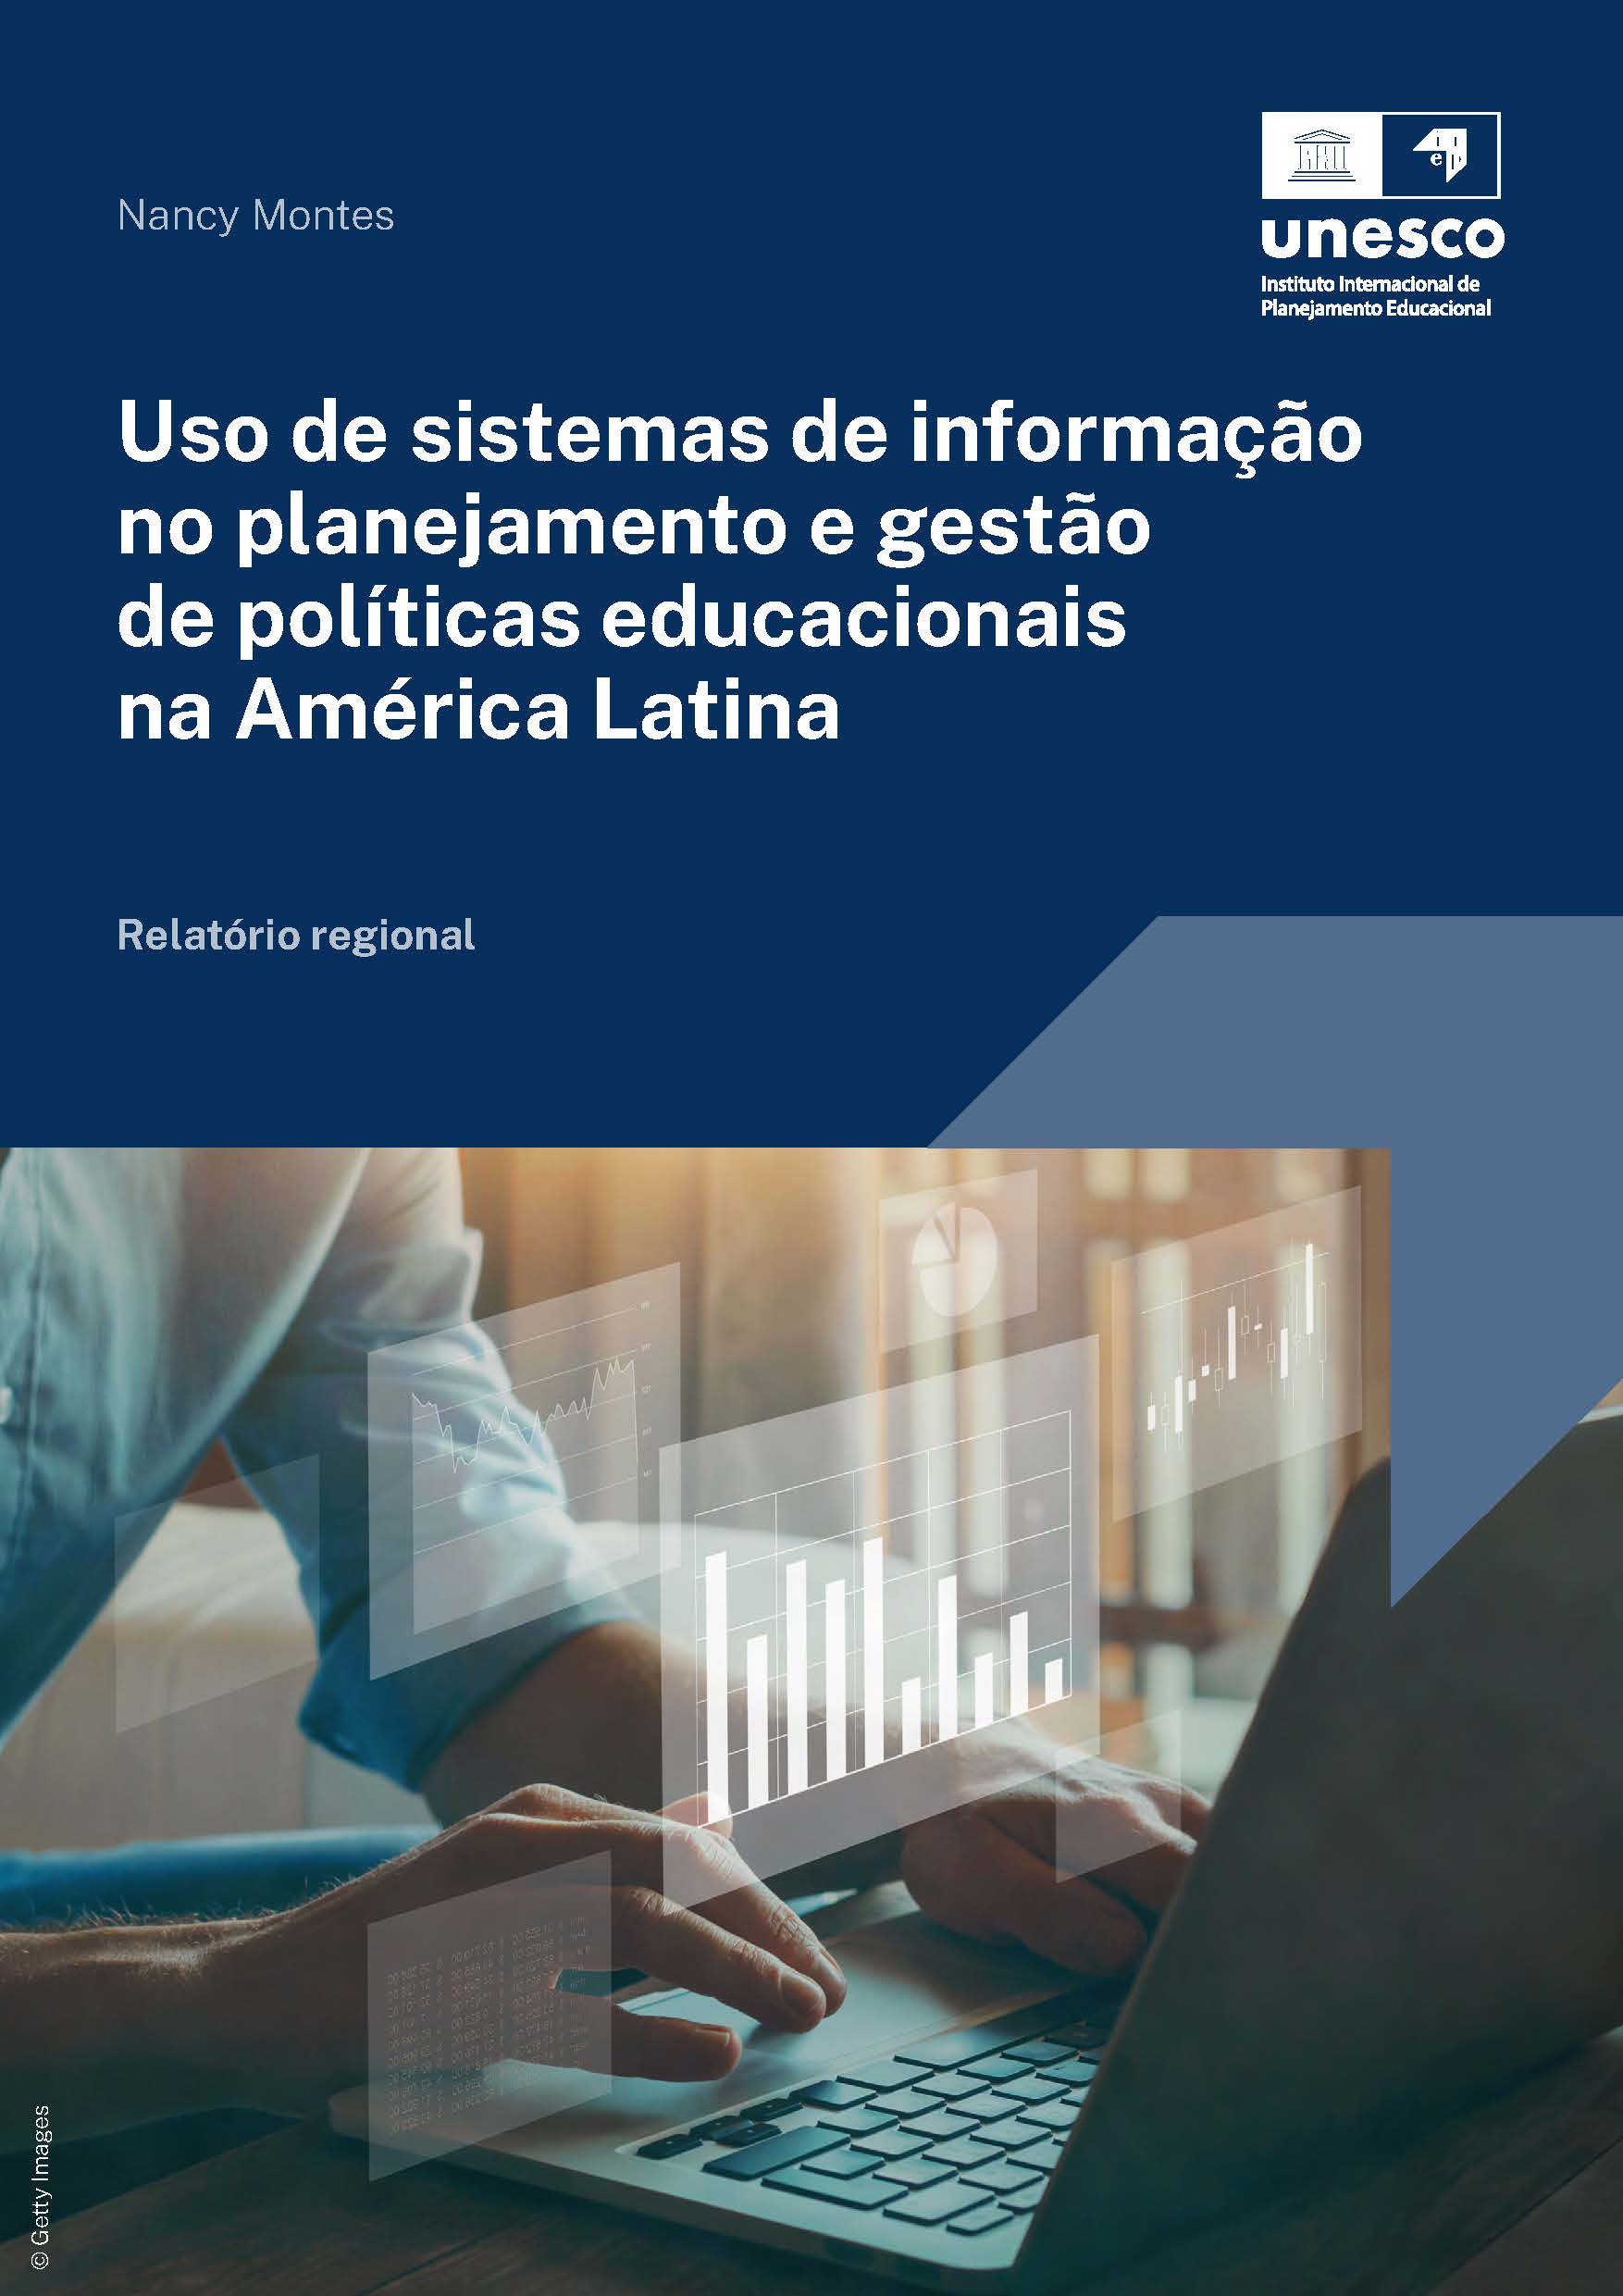 Uso de sistemas de informação no planejamento e gestão de políticas educacionais na América Latina